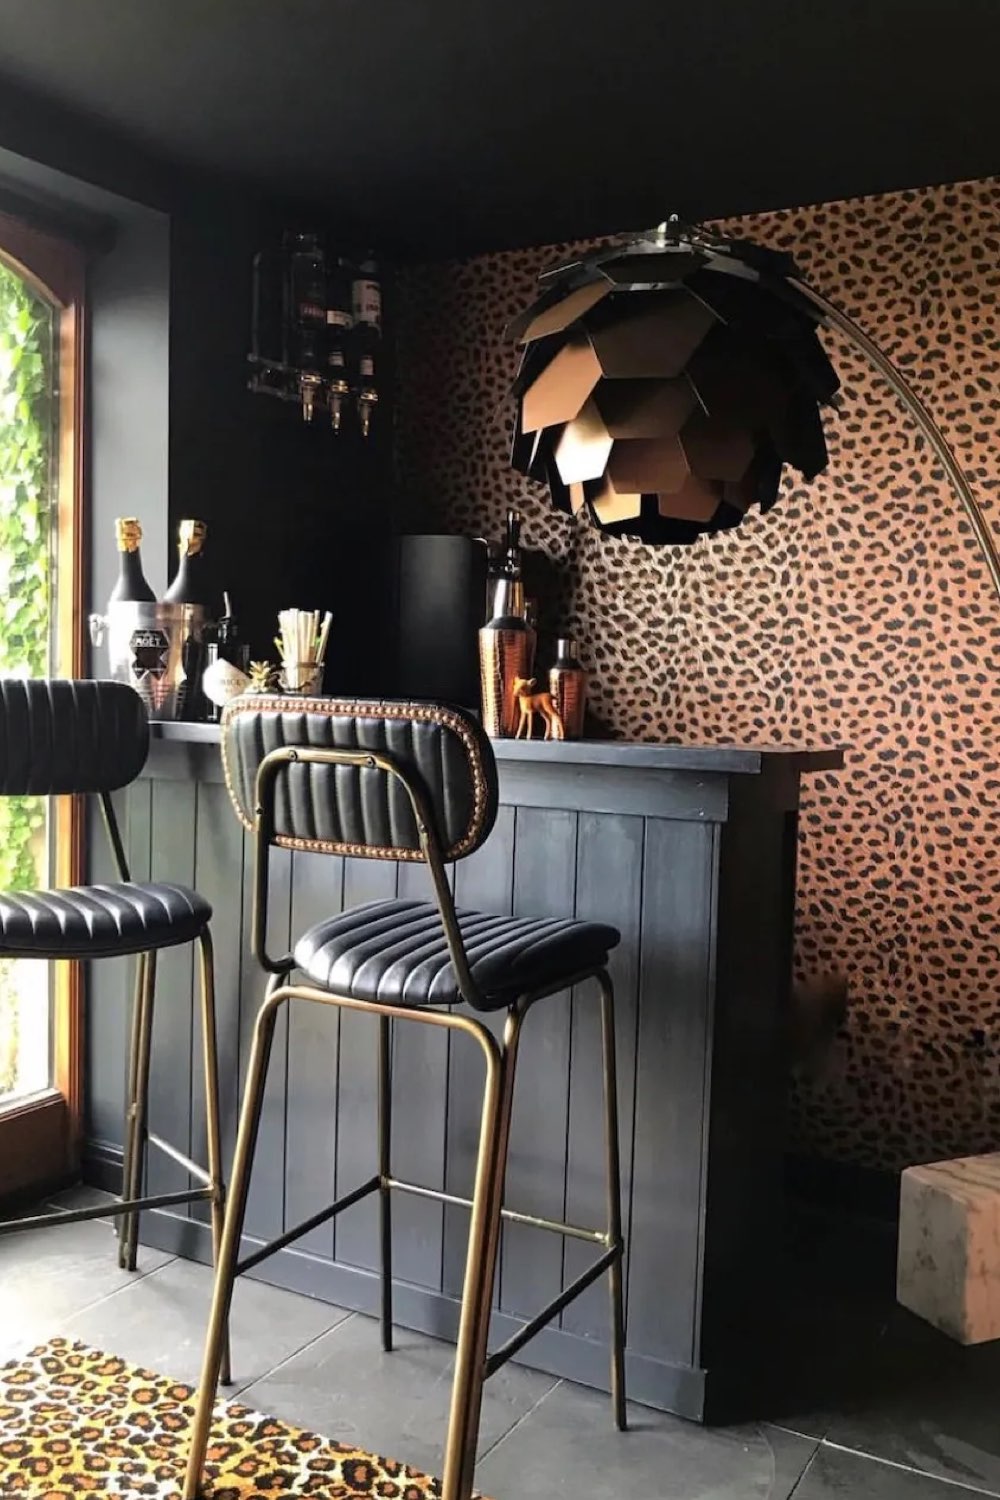 interieur couleur sourde eclectique bar en bois peint en noir papier peint tabouret élégant cuir et or